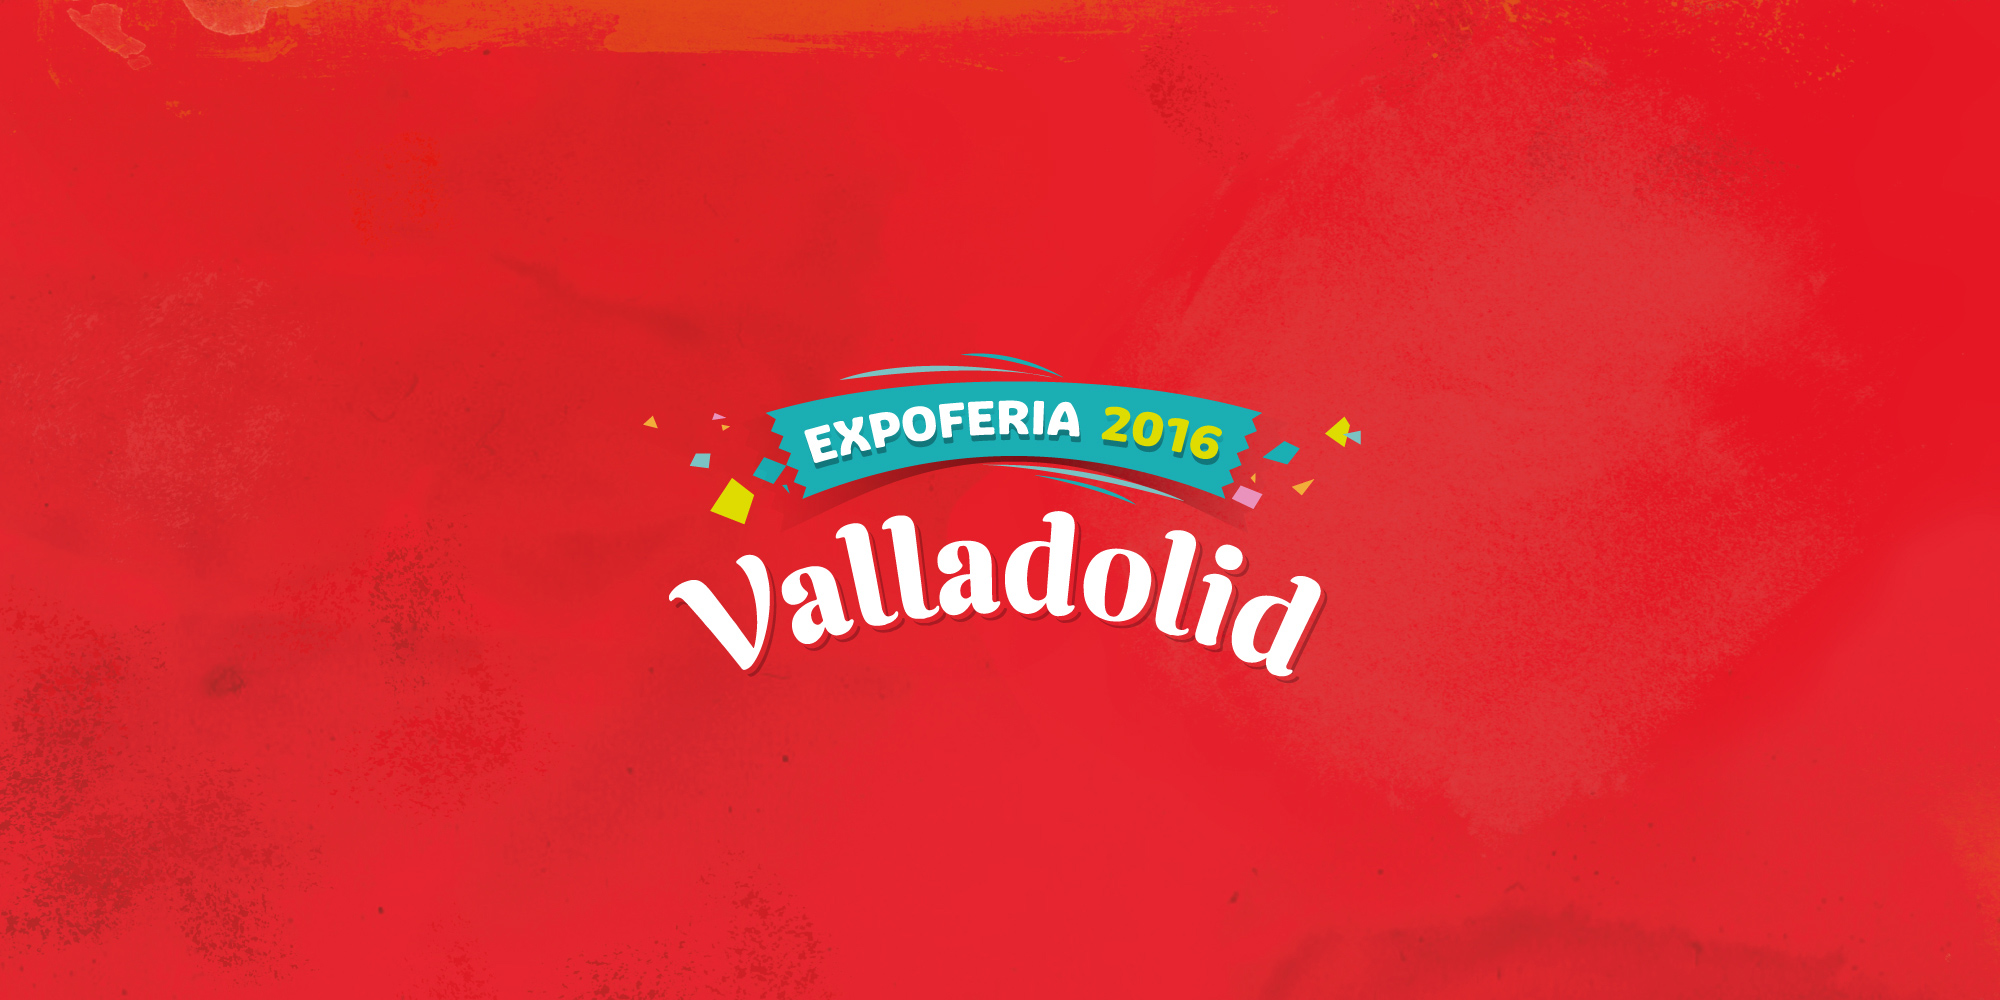 Expoferia Valladolid Fiesta Valla